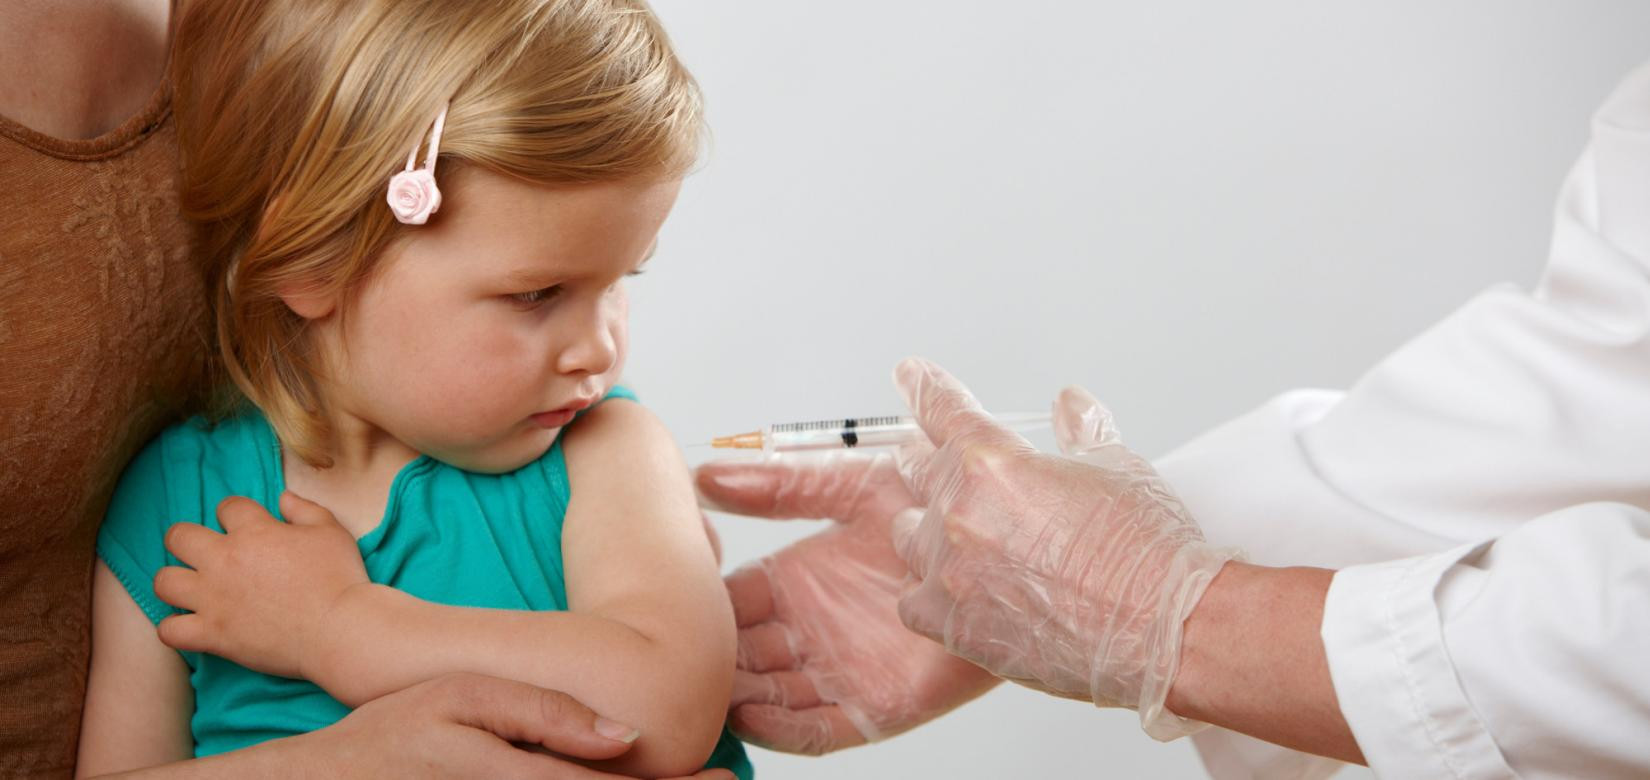 Αυτισμός και άλλοι μύθοι γύρω από τα «κακά εμβόλια»